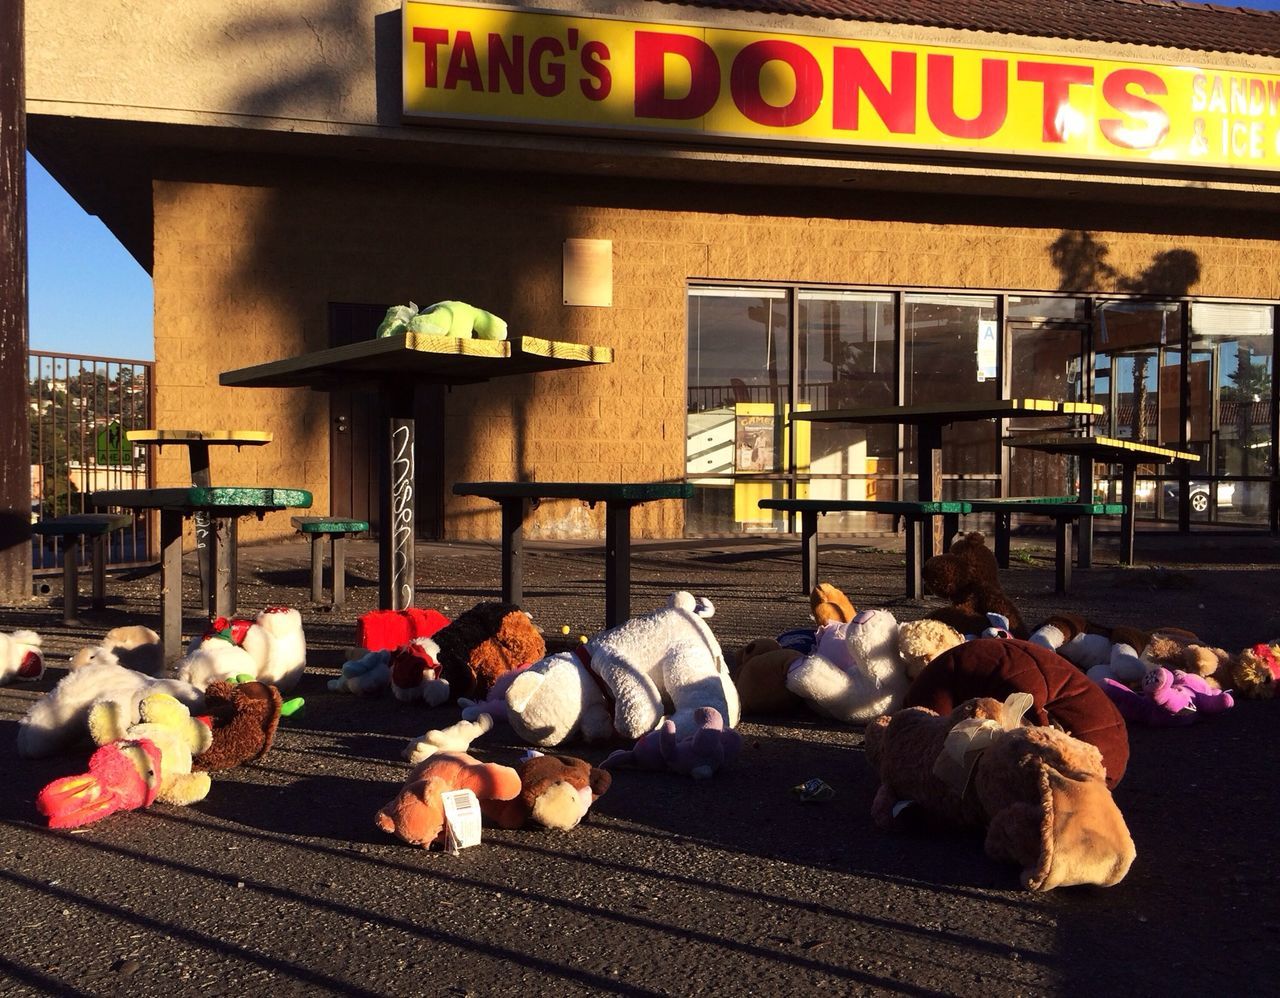 Tang's Donuts